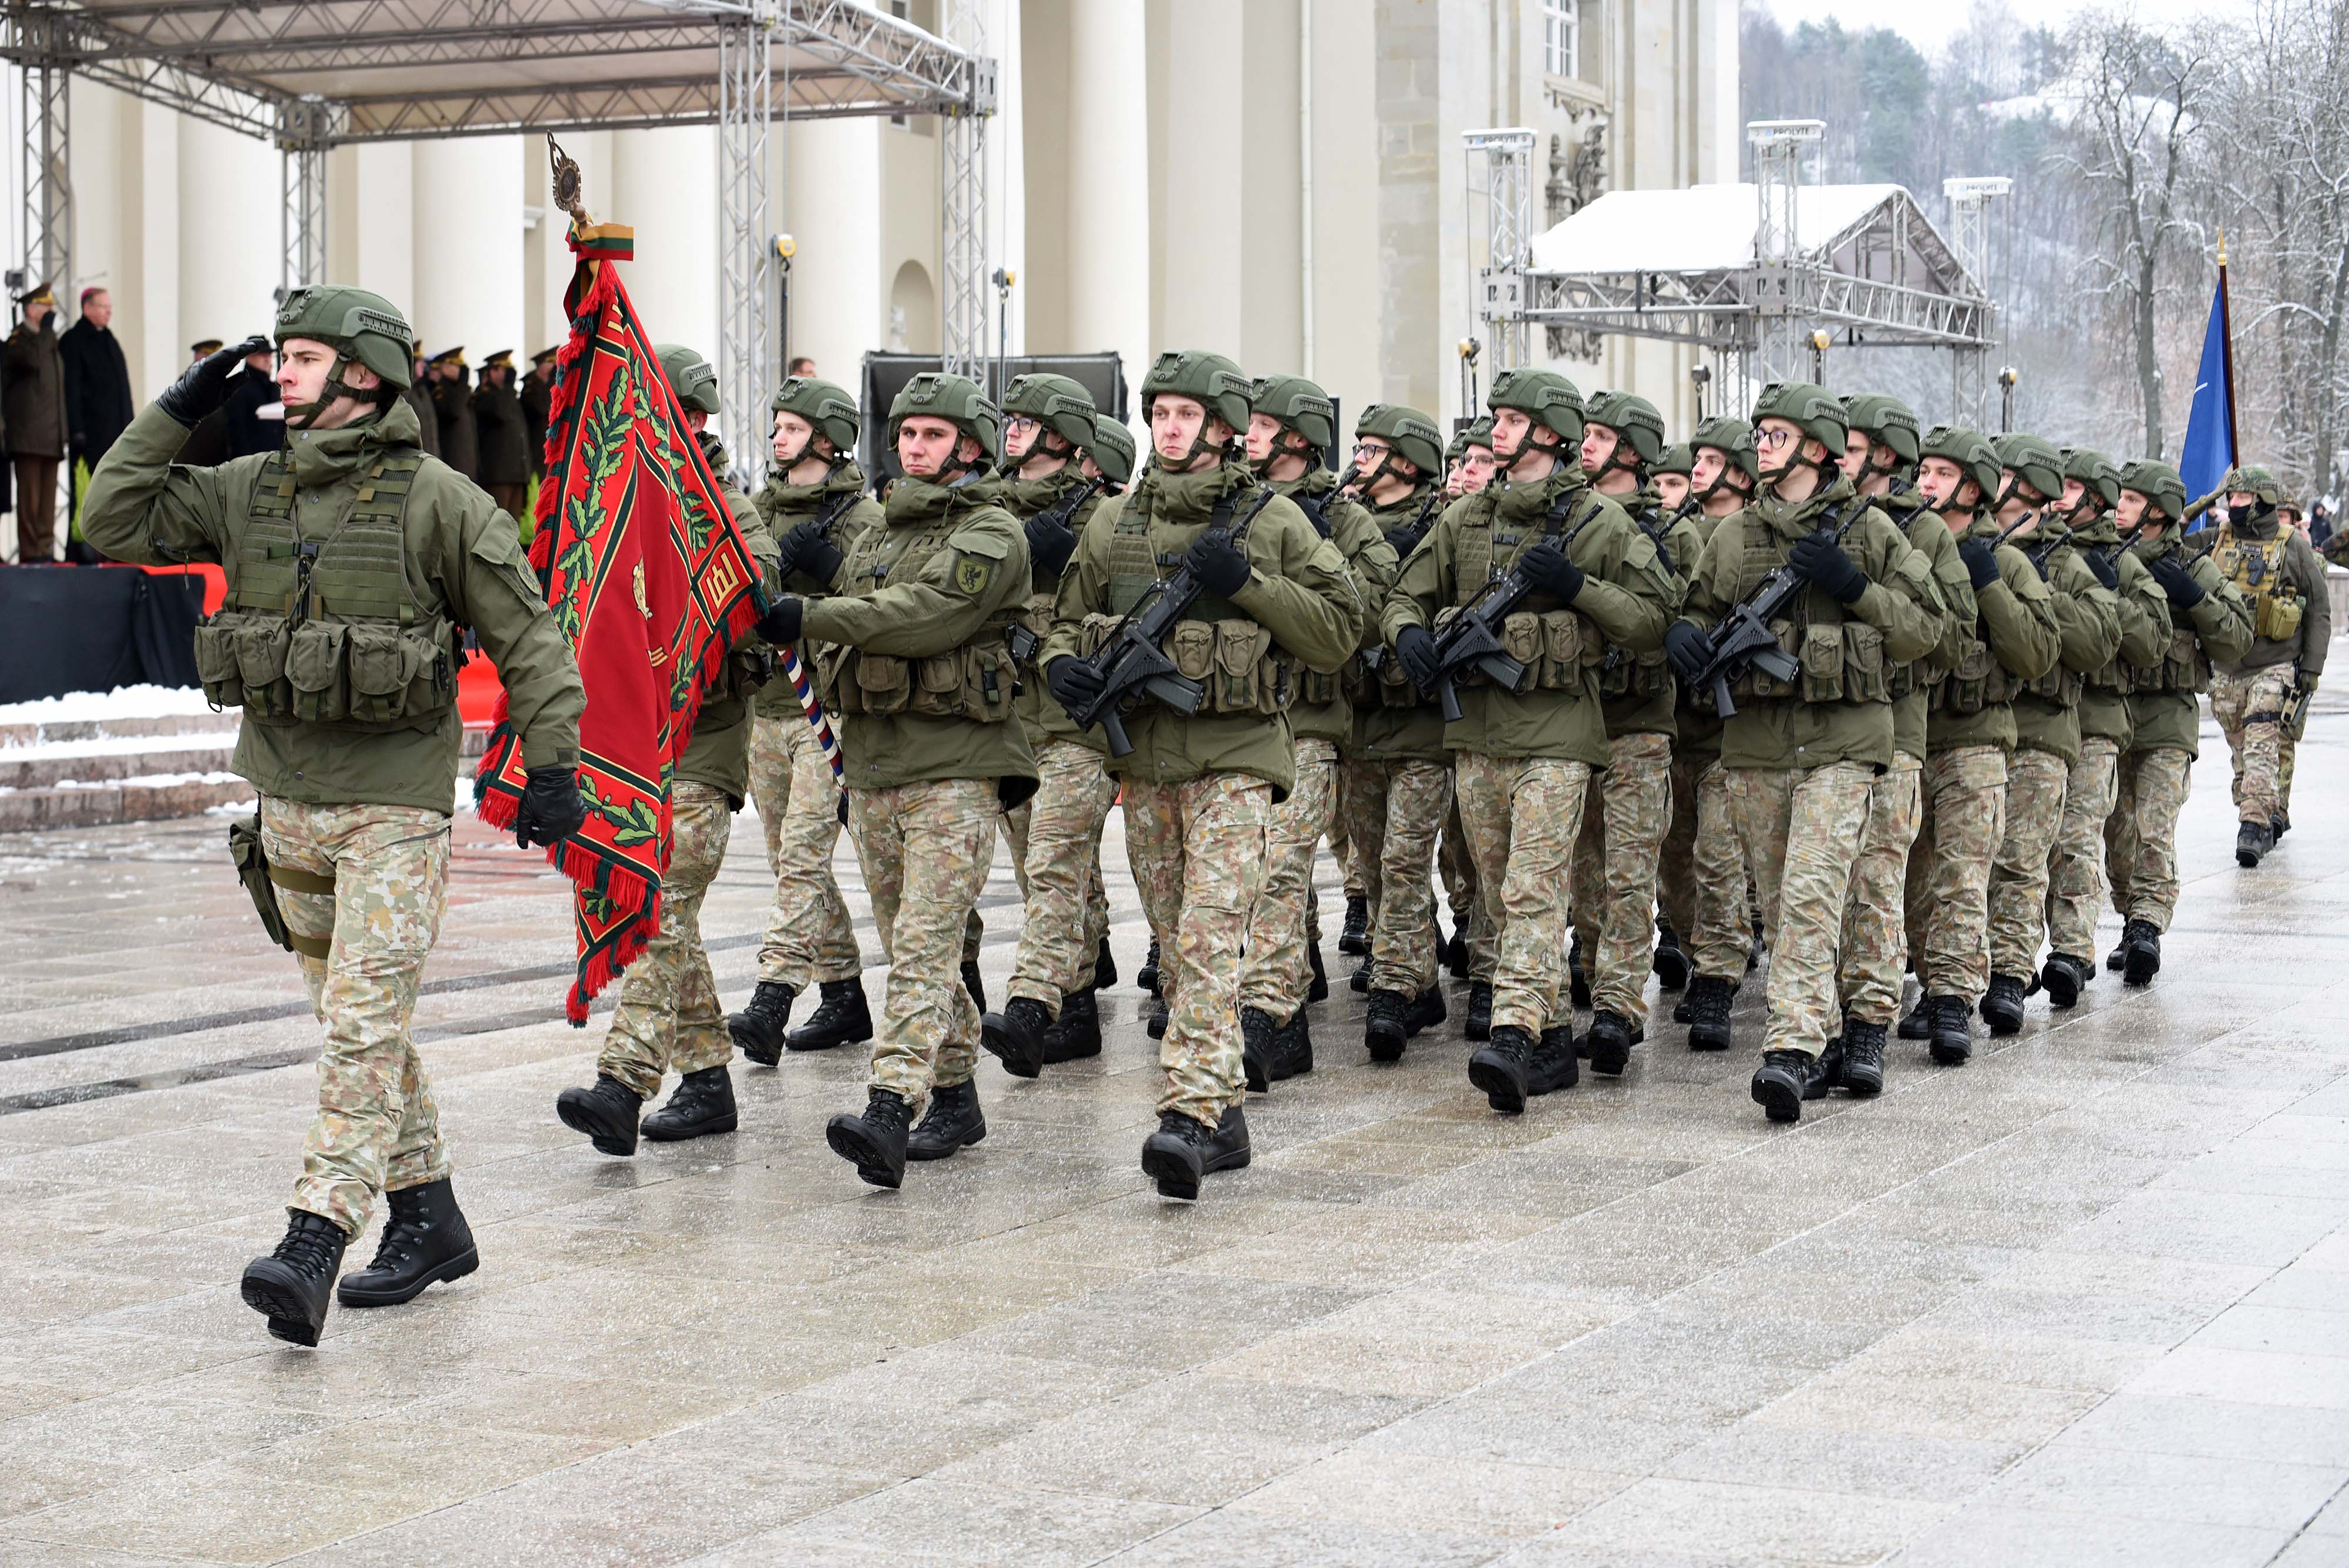 Vilniuje įvyko iškilminga Lietuvos kariuomenės rikiuotė ir paradas su sąjungininkais